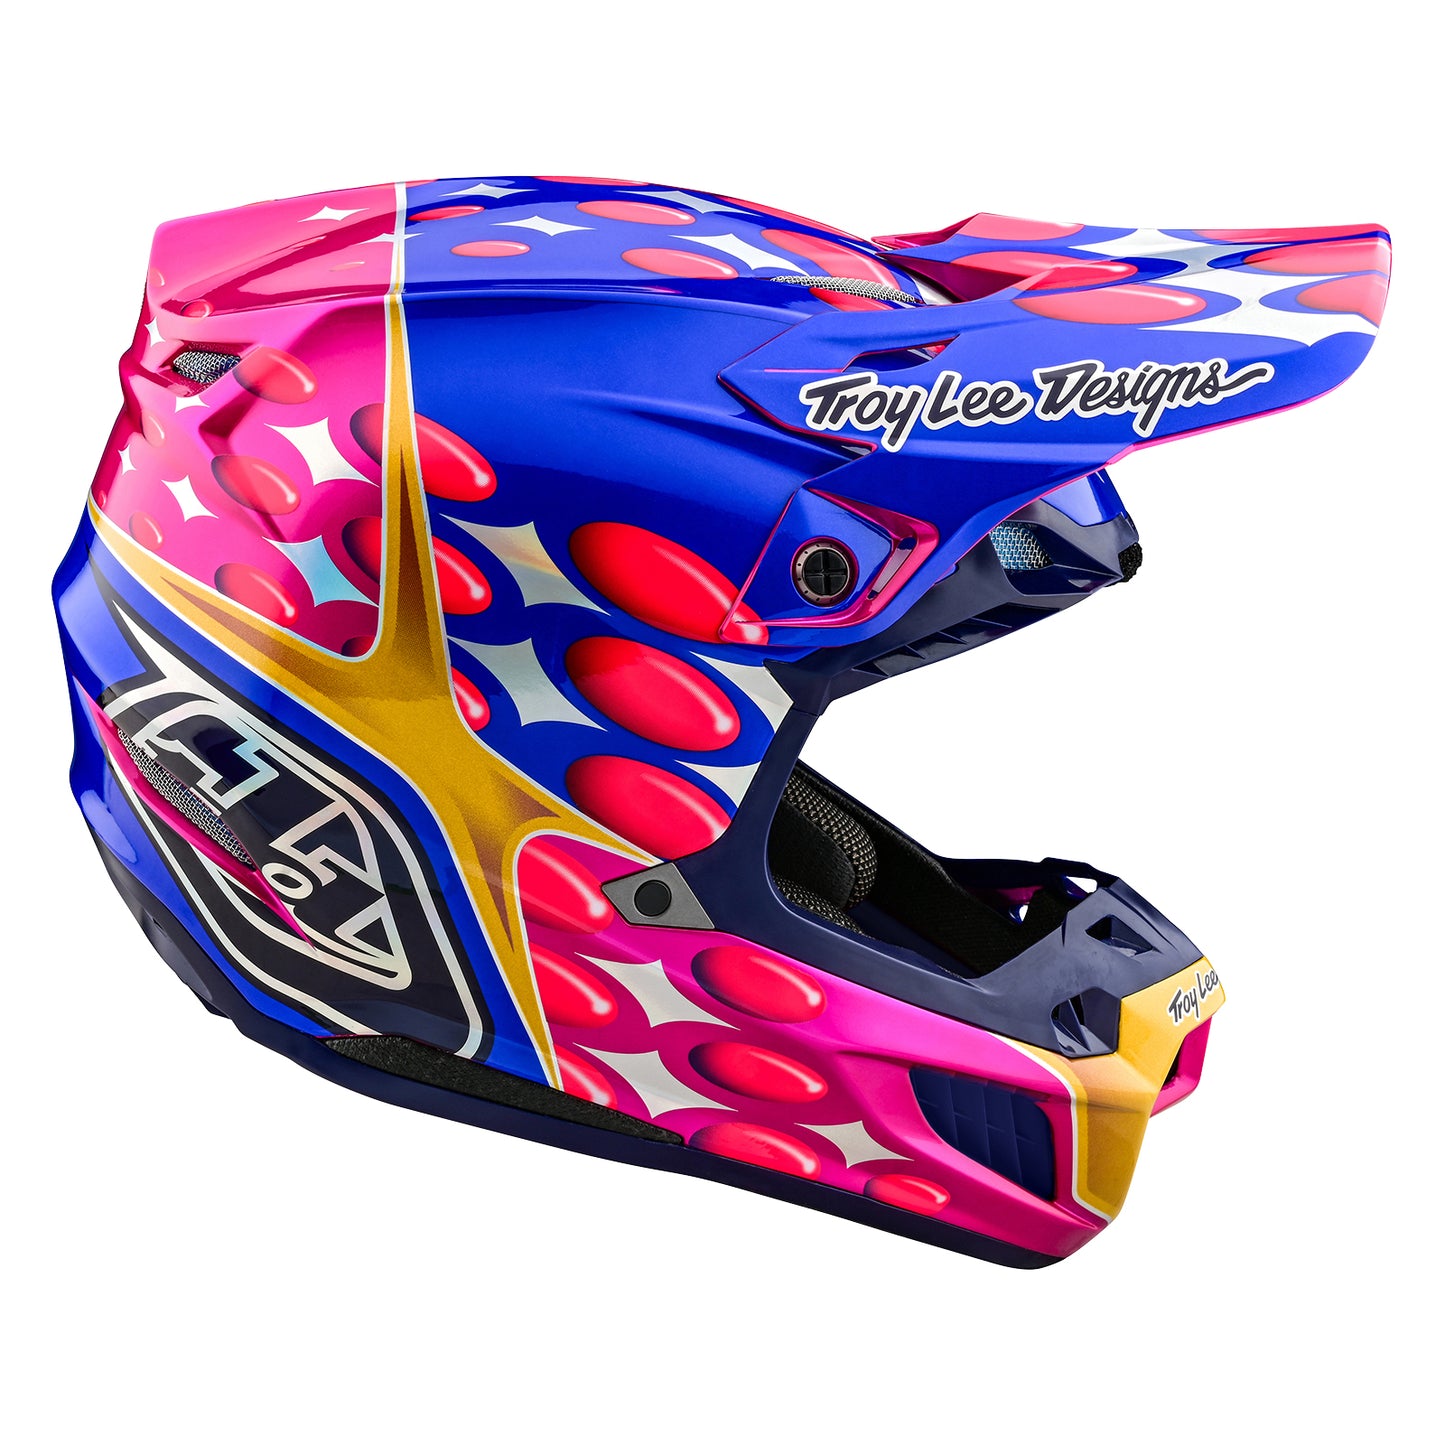 TLD SE5 Composite Helmet W/MIPS Blurr Pink